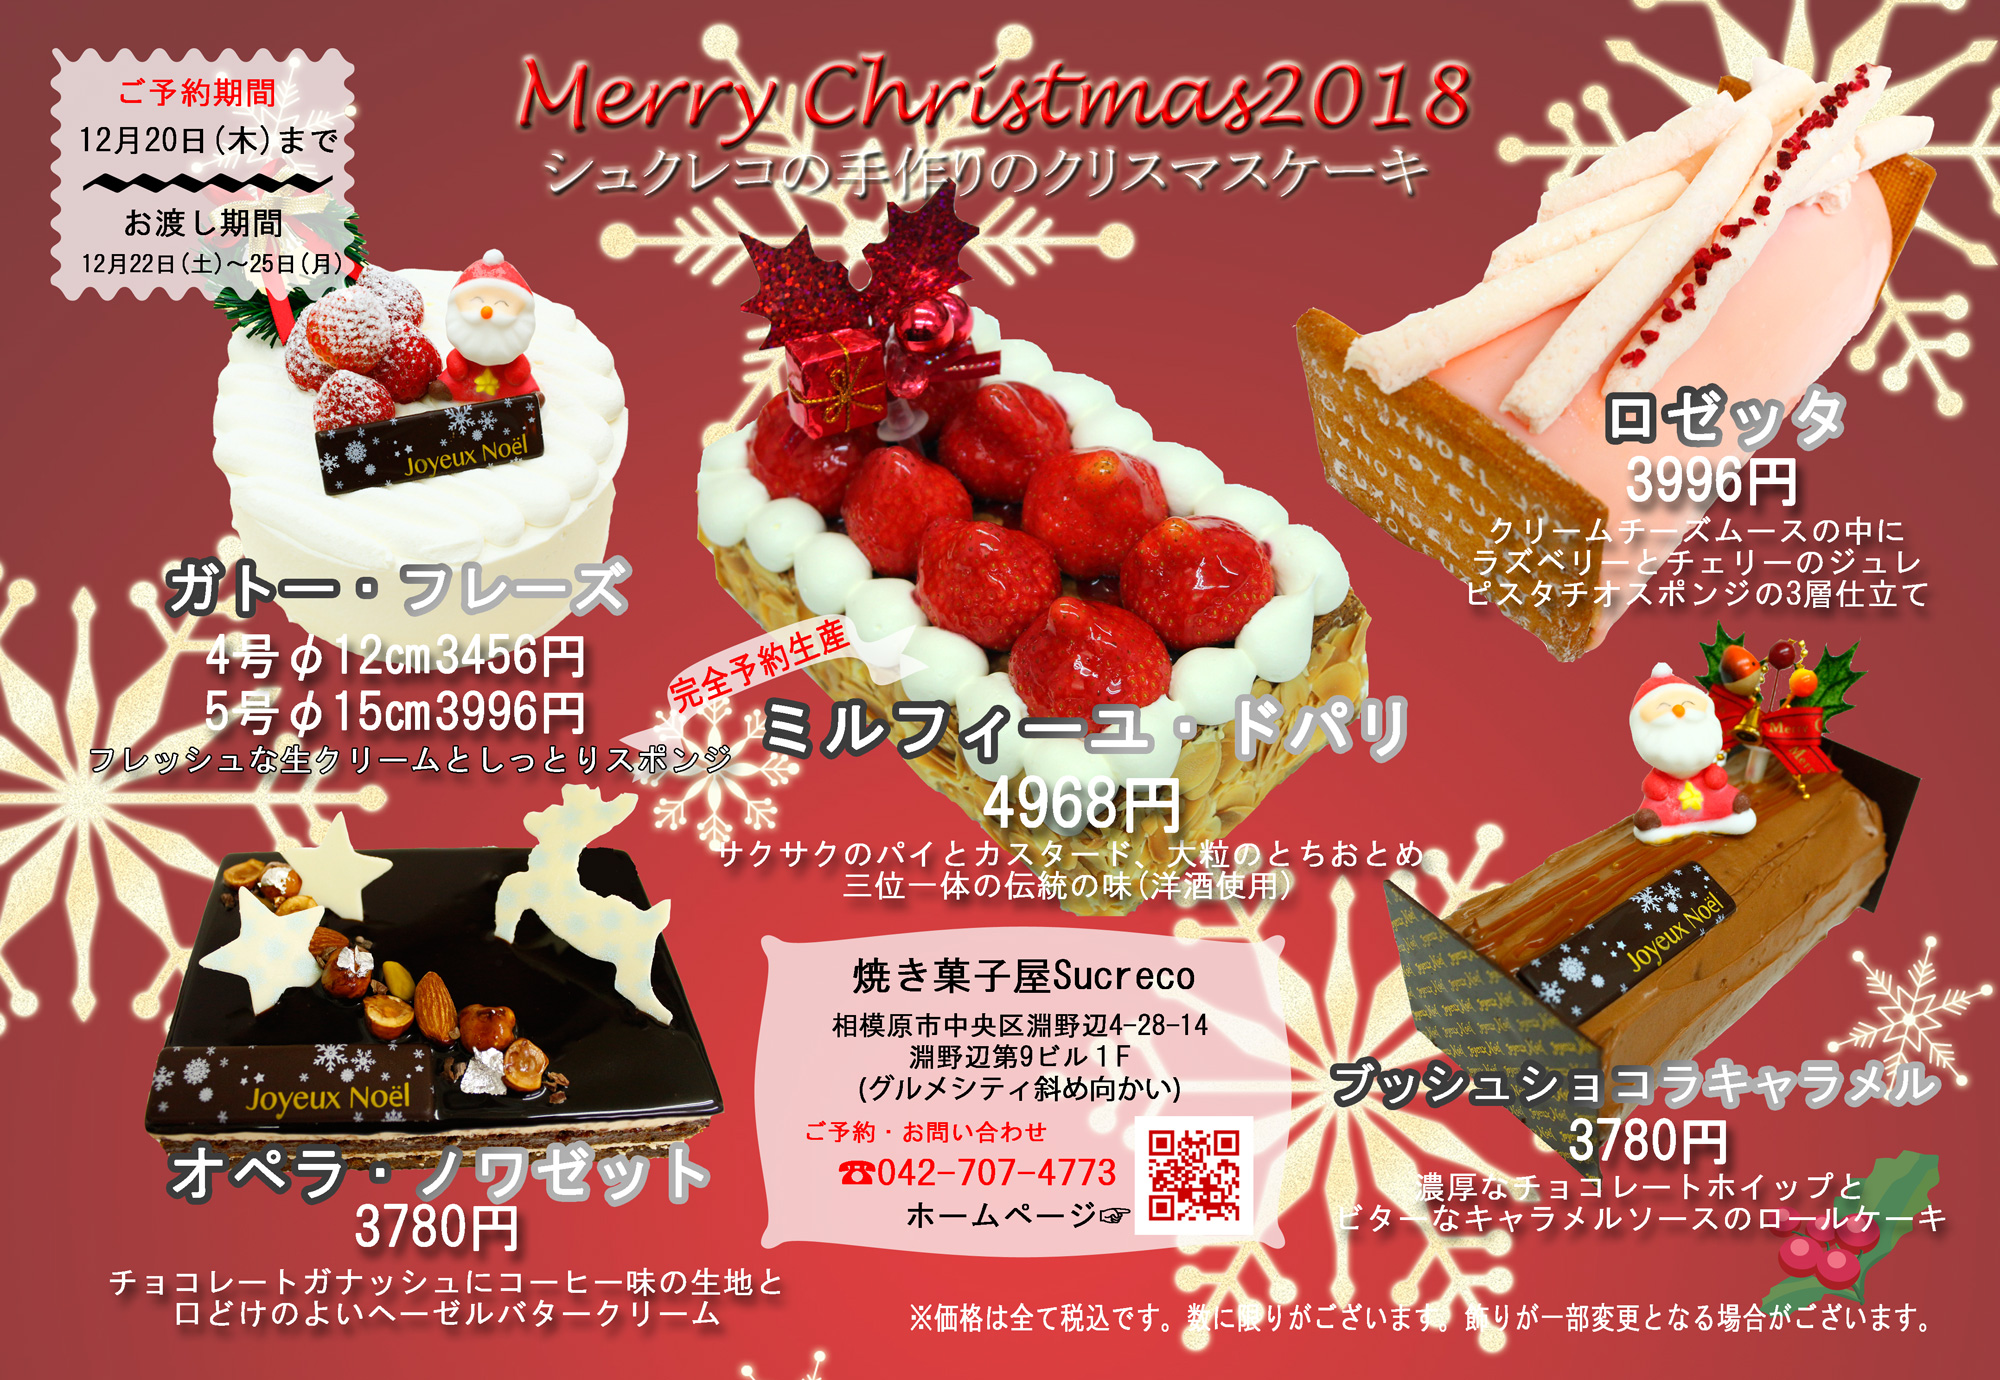 クリスマスケーキ18 焼き菓子の店 相模原 焼き菓子屋sucreco